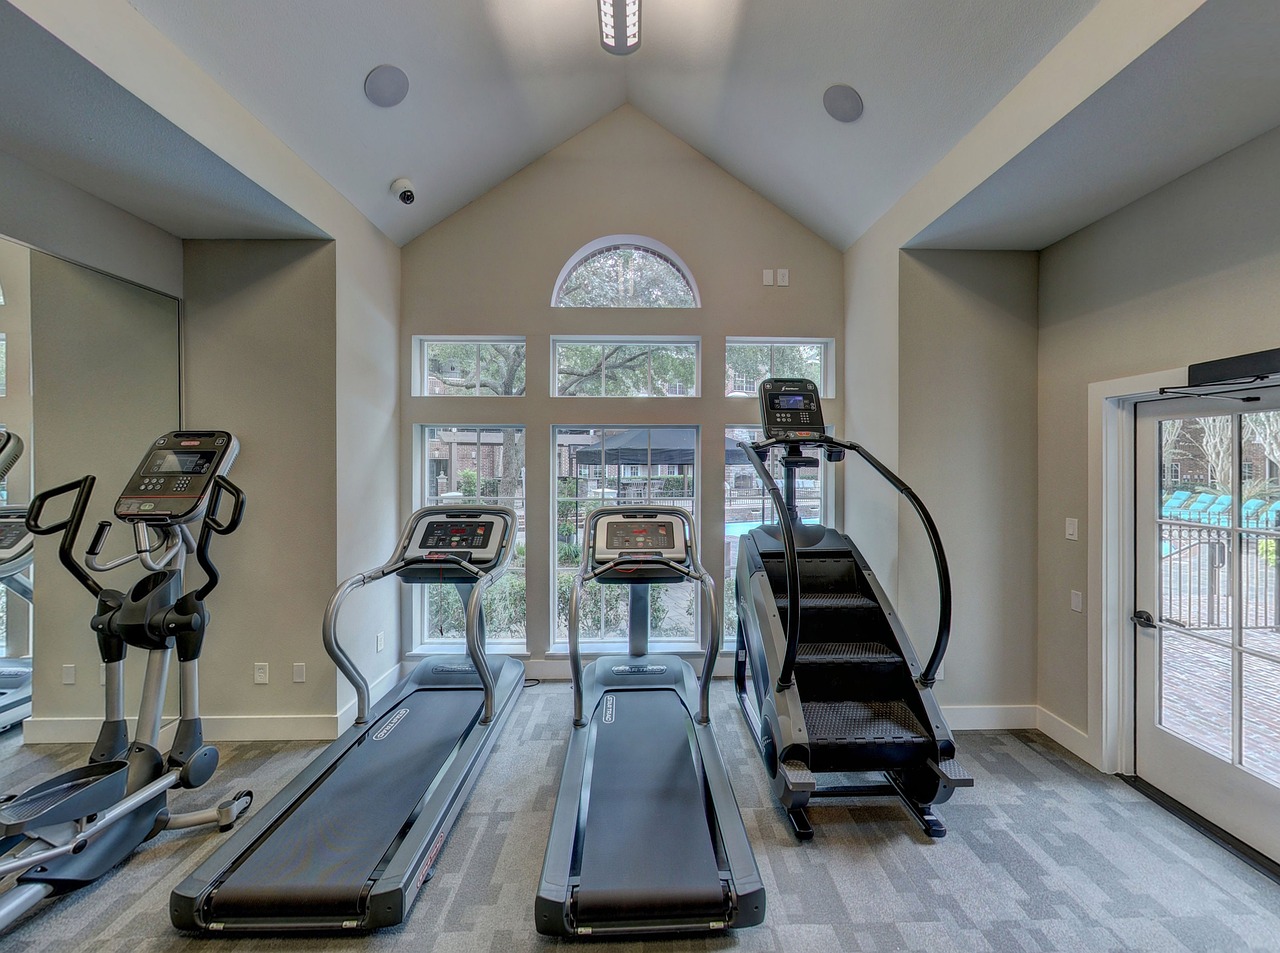 Cómo armar un gimnasio en tu hogar: Consejos prácticos para tener una rutina de ejercicios en casa